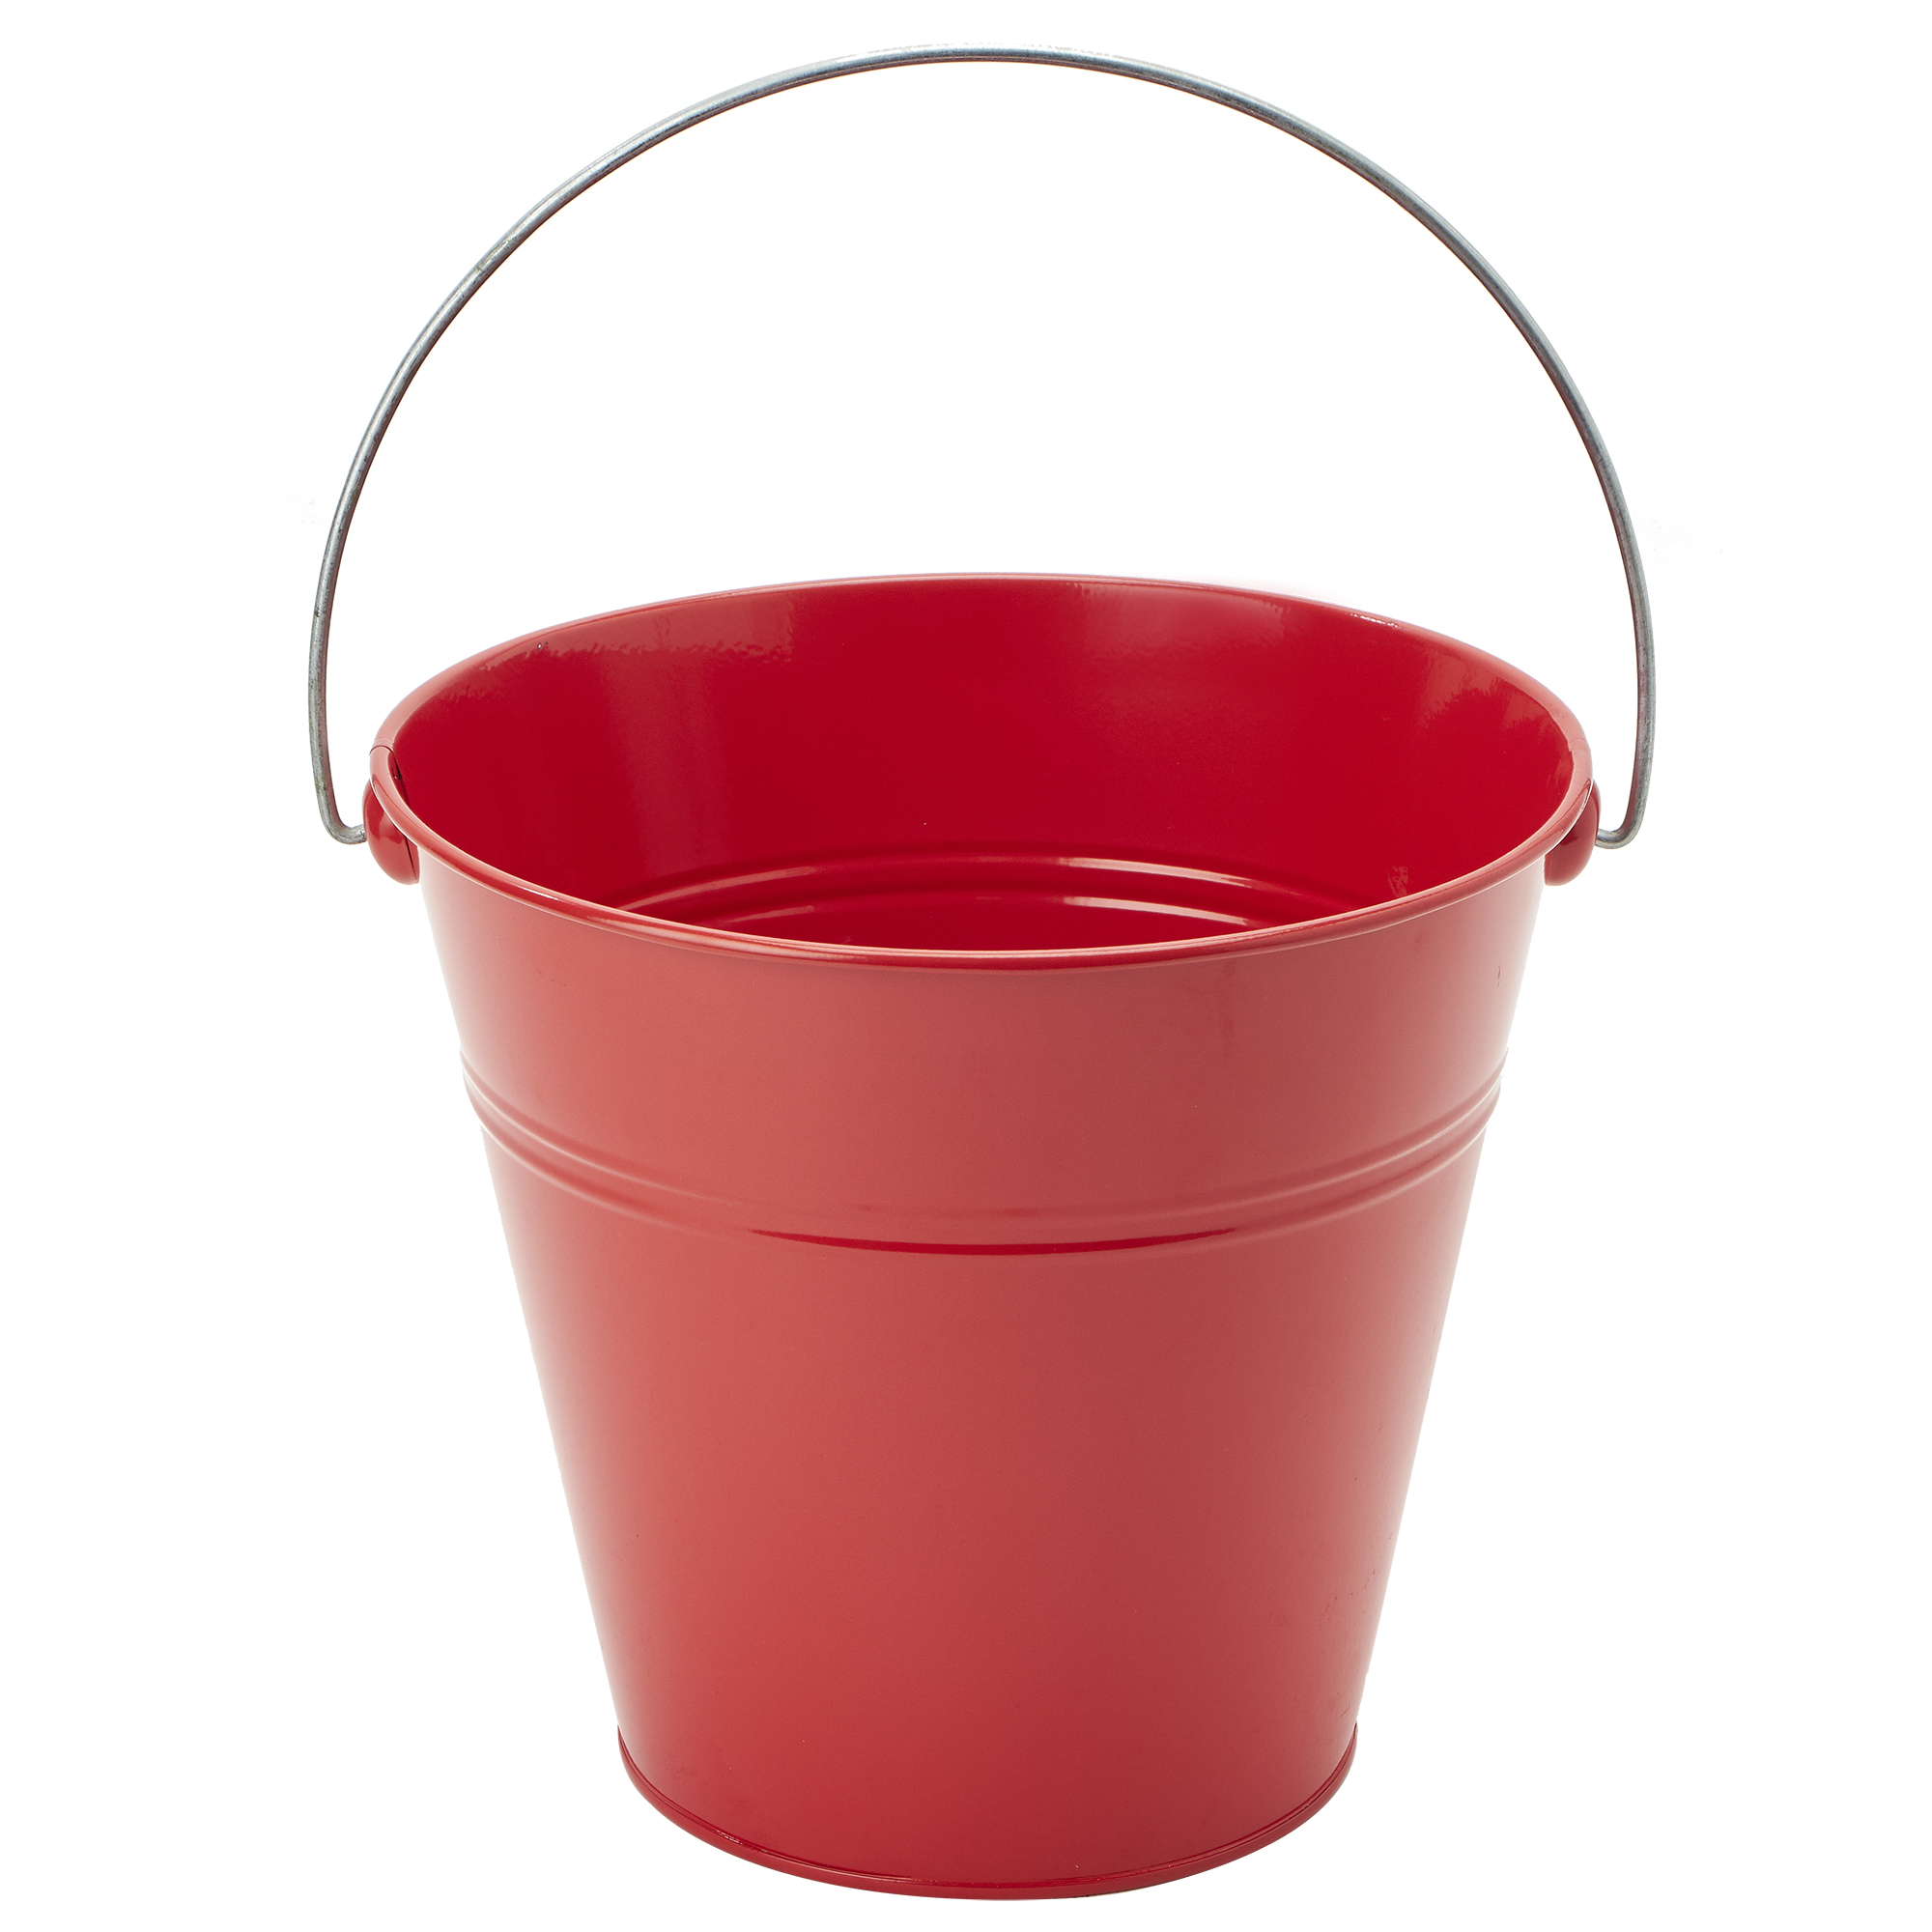 Tin Metal Pail Bucket - Red